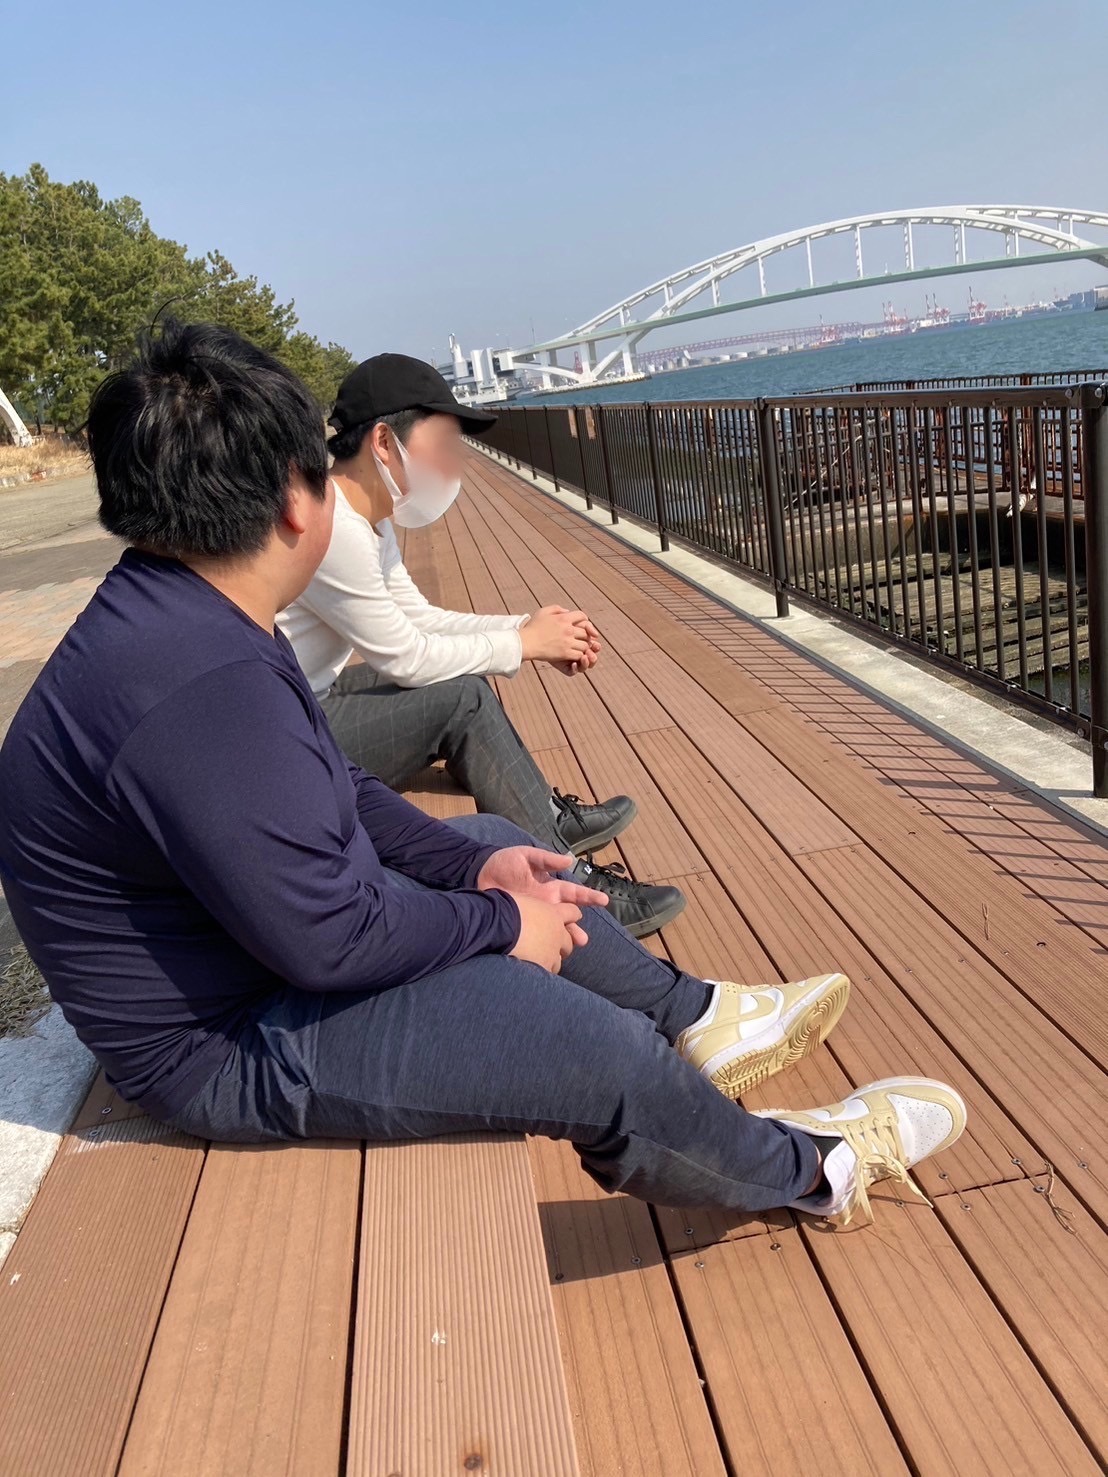 大阪市浪速区の放課後等デイサービスオハナピース大阪日本橋の舞洲緑地公園へおでかけ